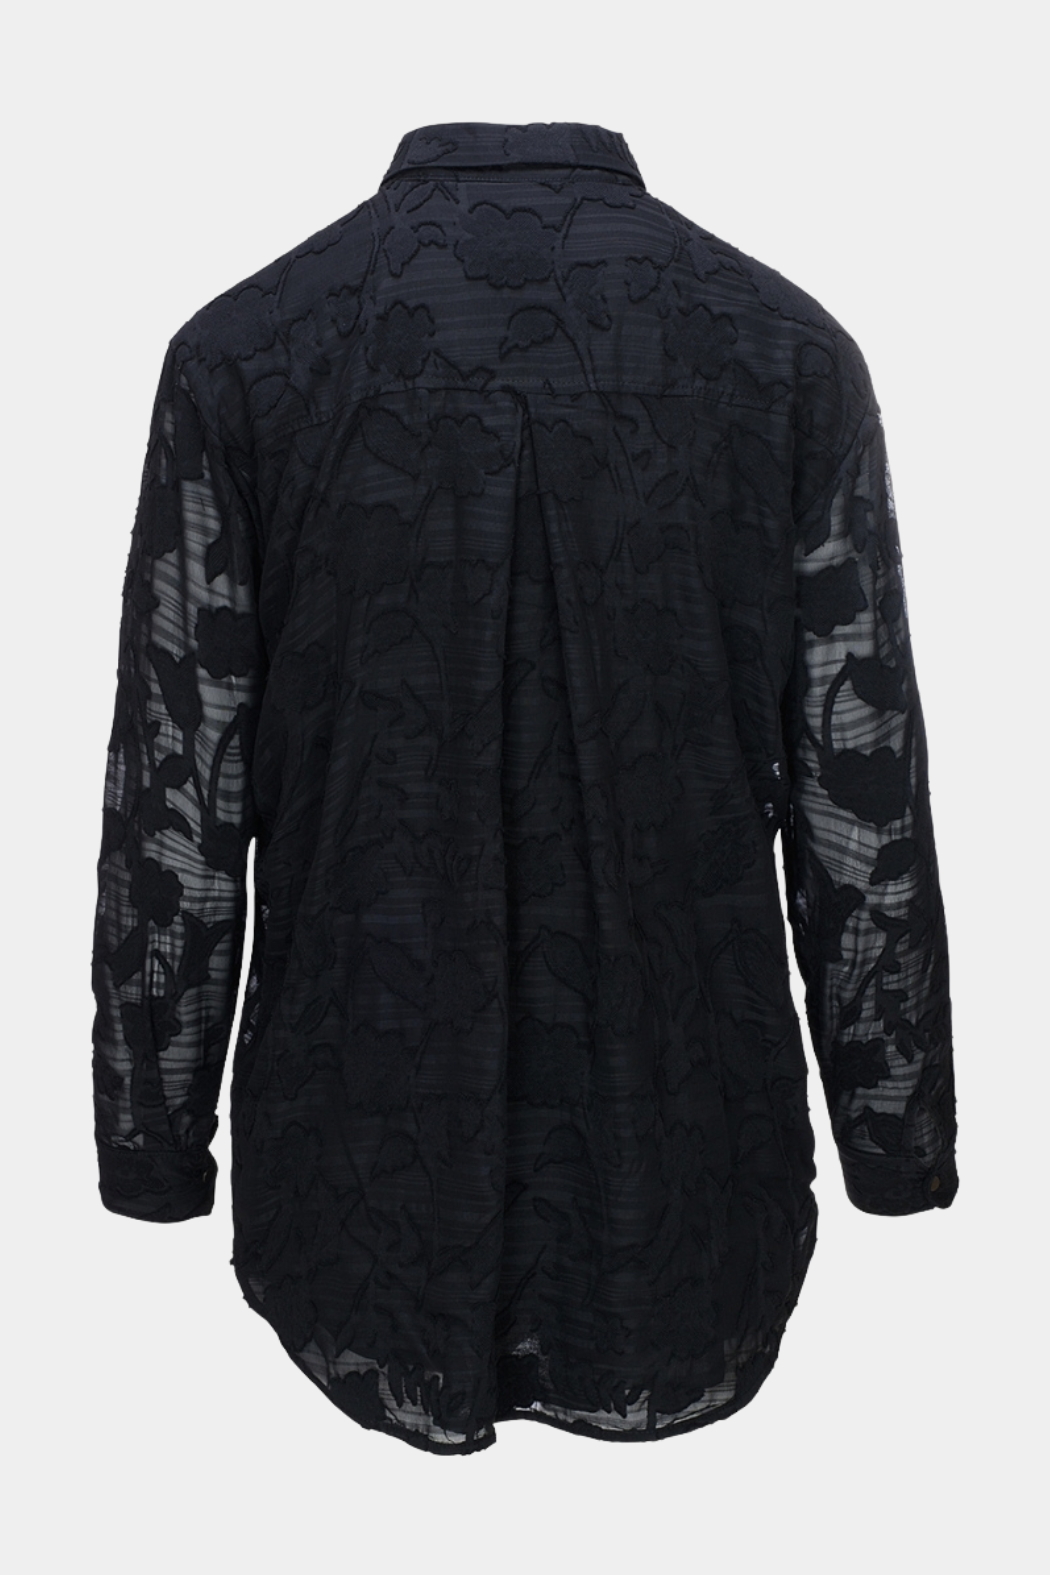 Gertanzer shirt, black